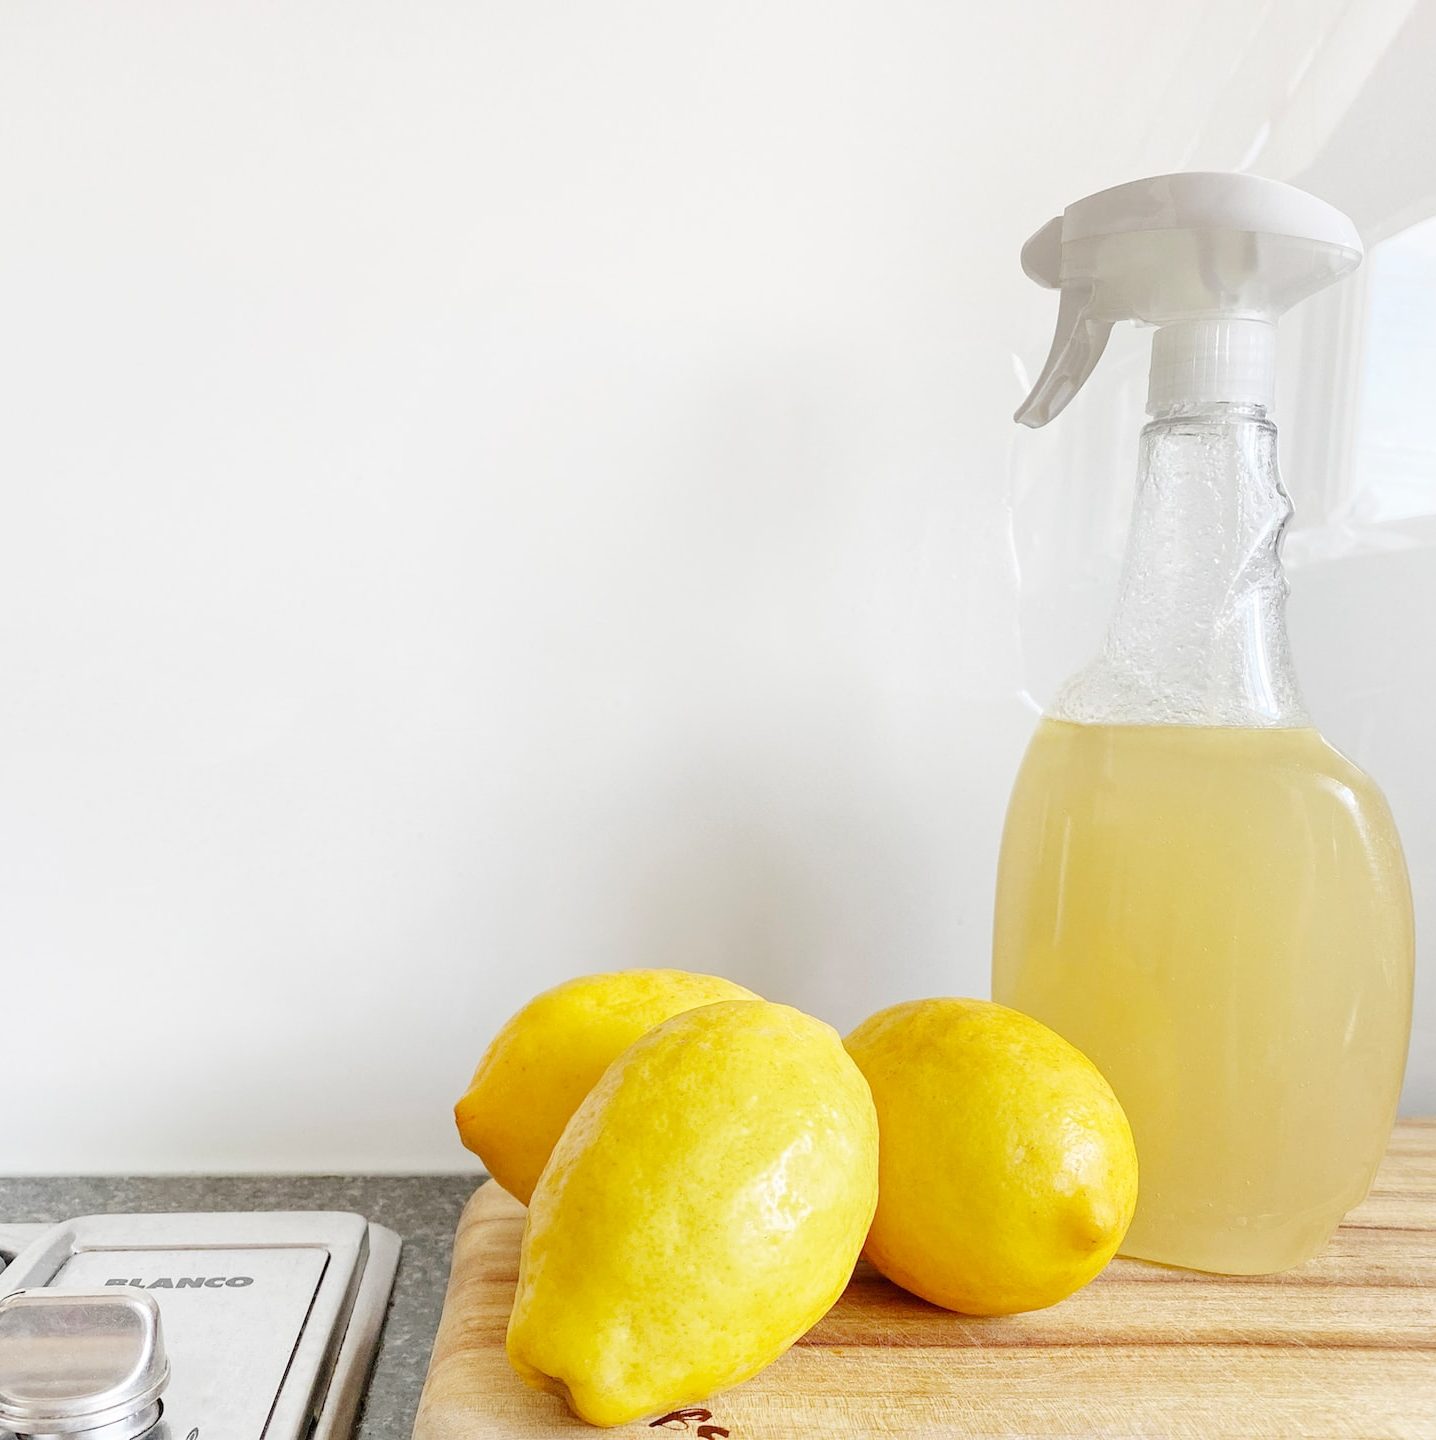 yellow lemon fruit beside clear glass bottle